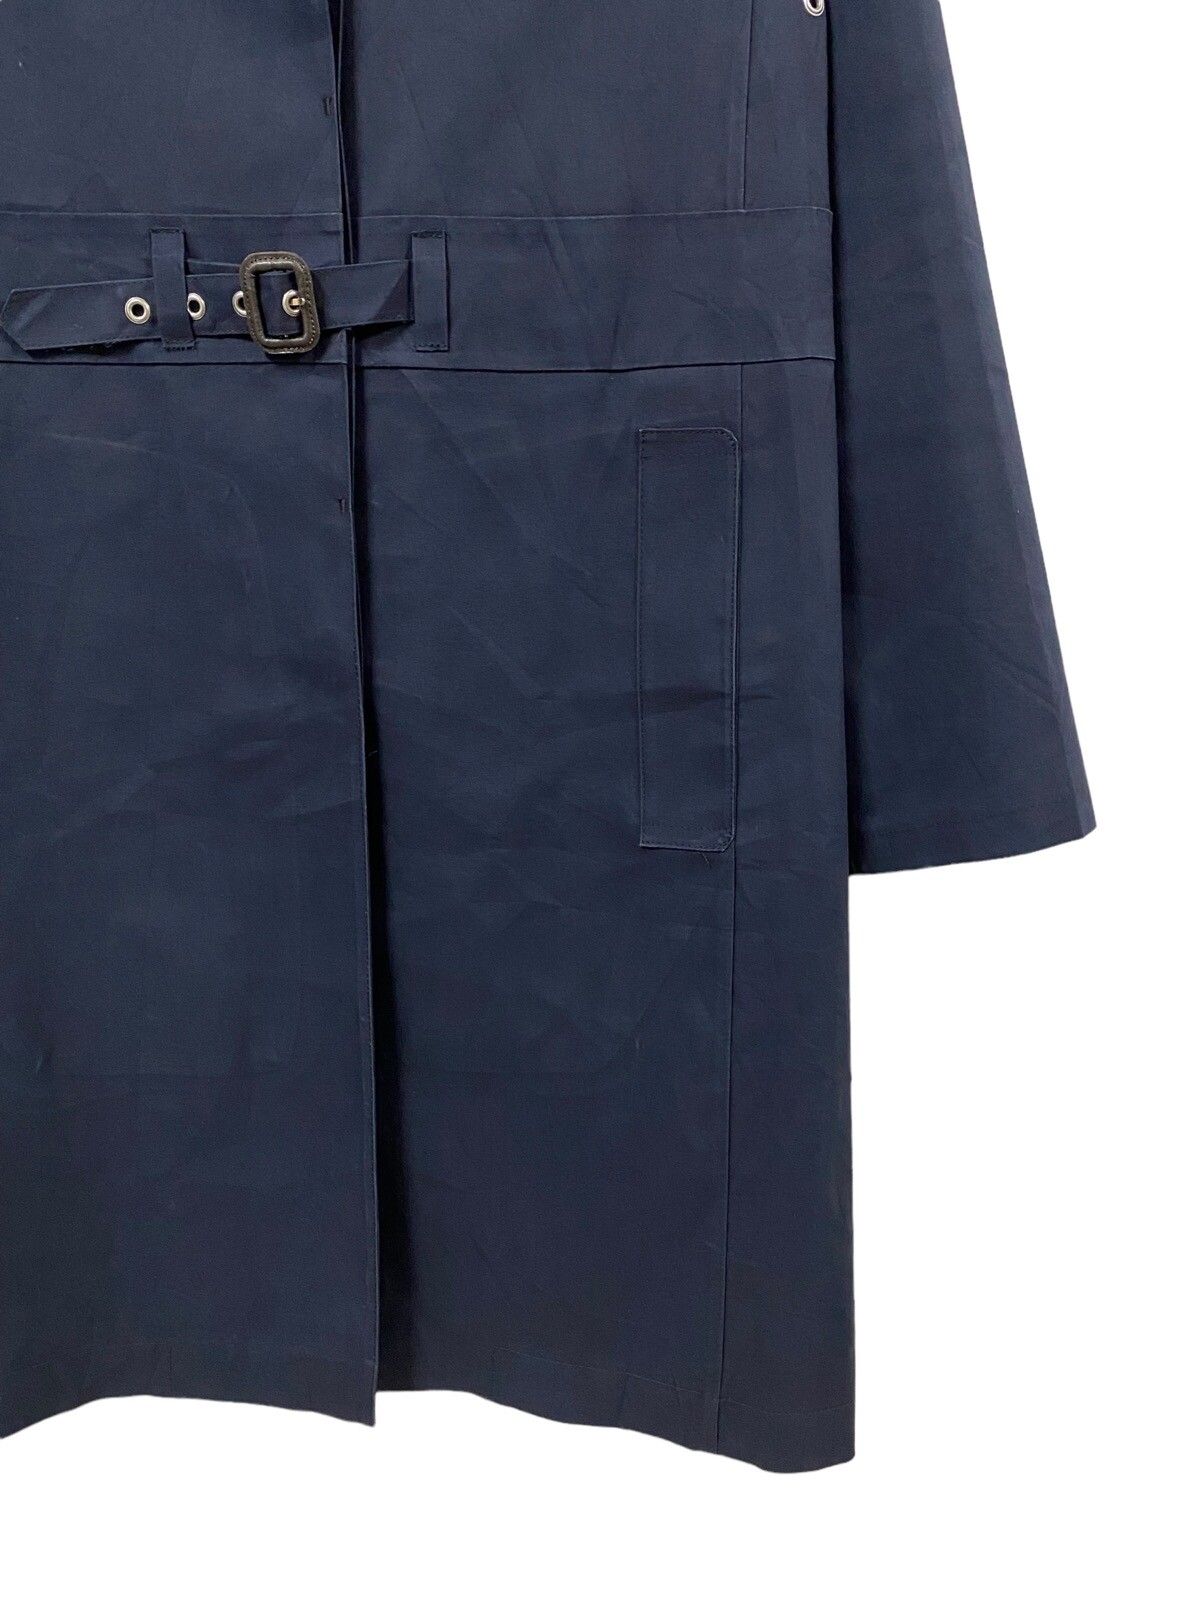 Mackintosh Genuine Handmade Trenchcoat Belted Jacket - 10